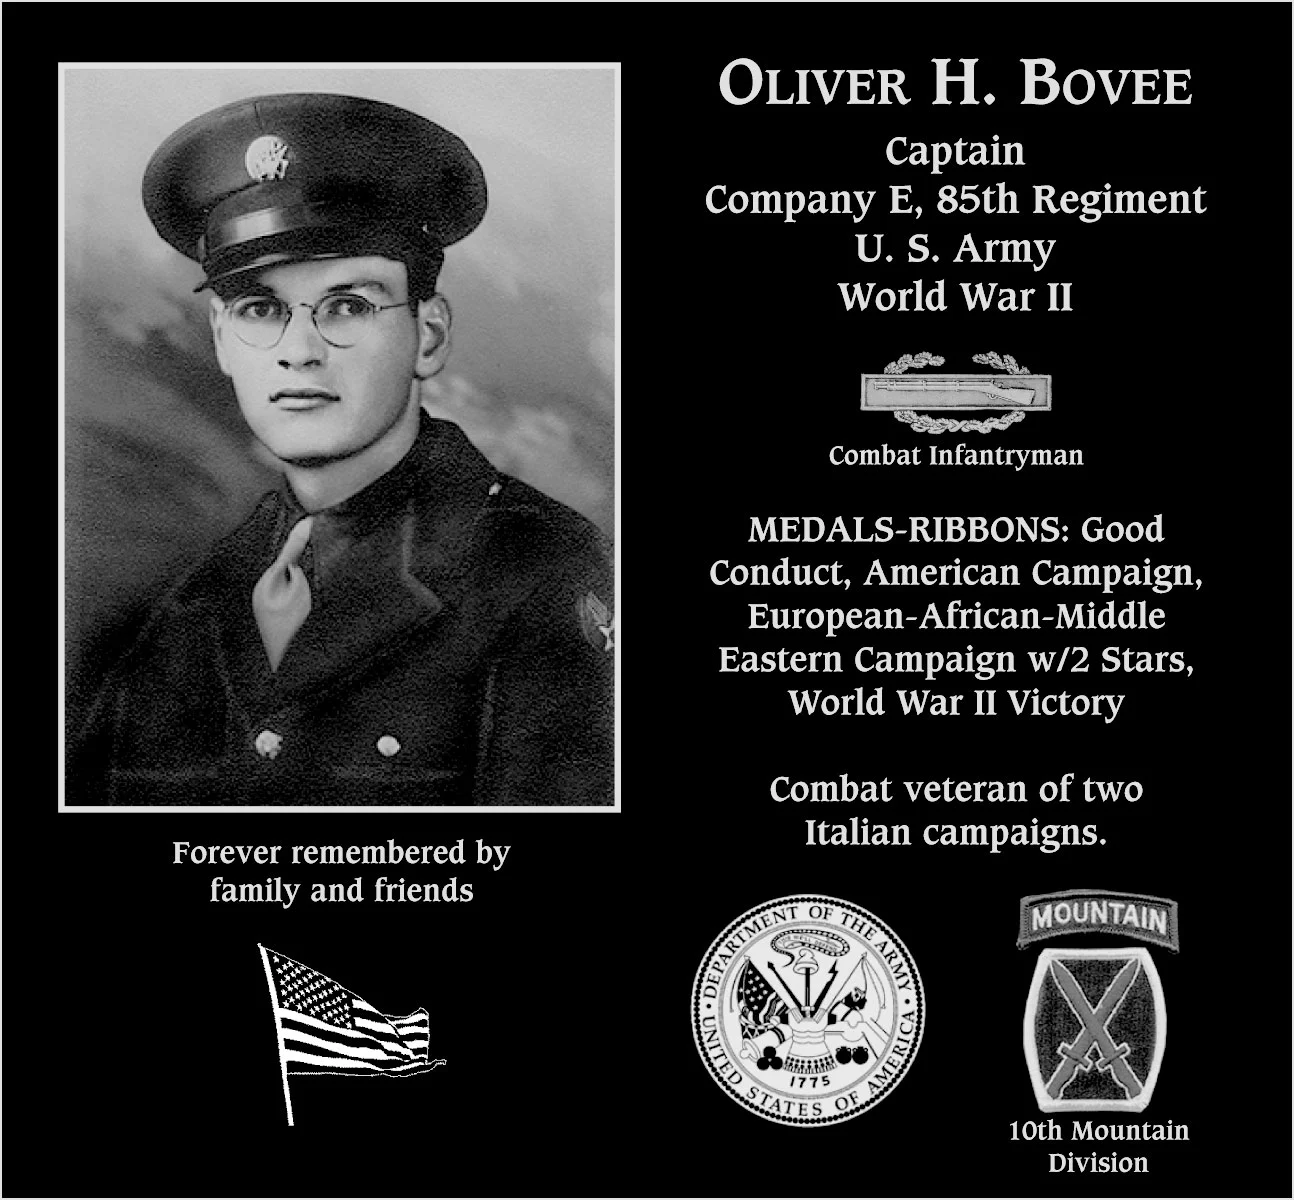 Oliver H. Bovee